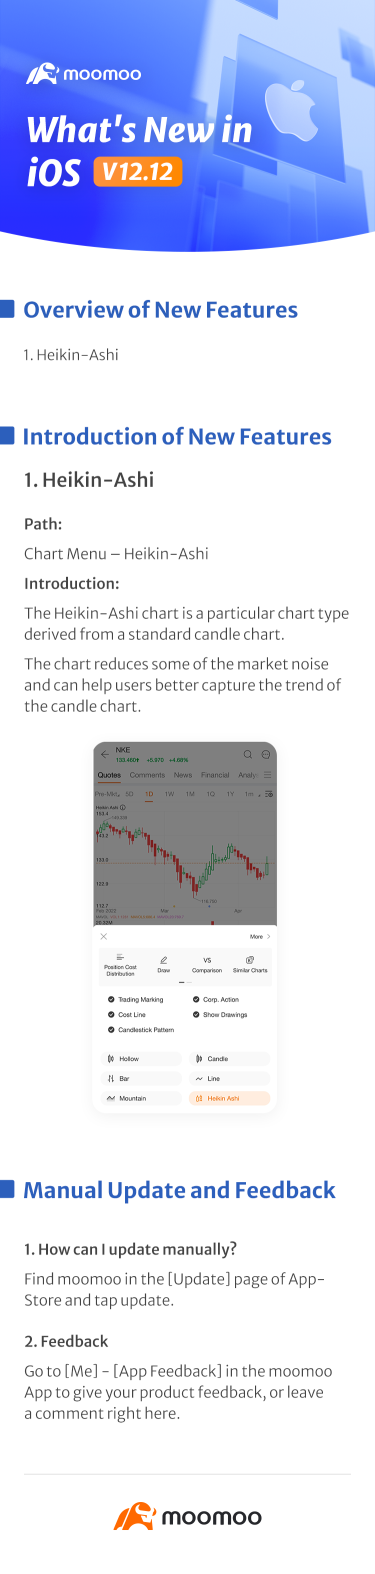 新增内容：Heikin-Ashi 图表现已在 iOS v12.12 中推出